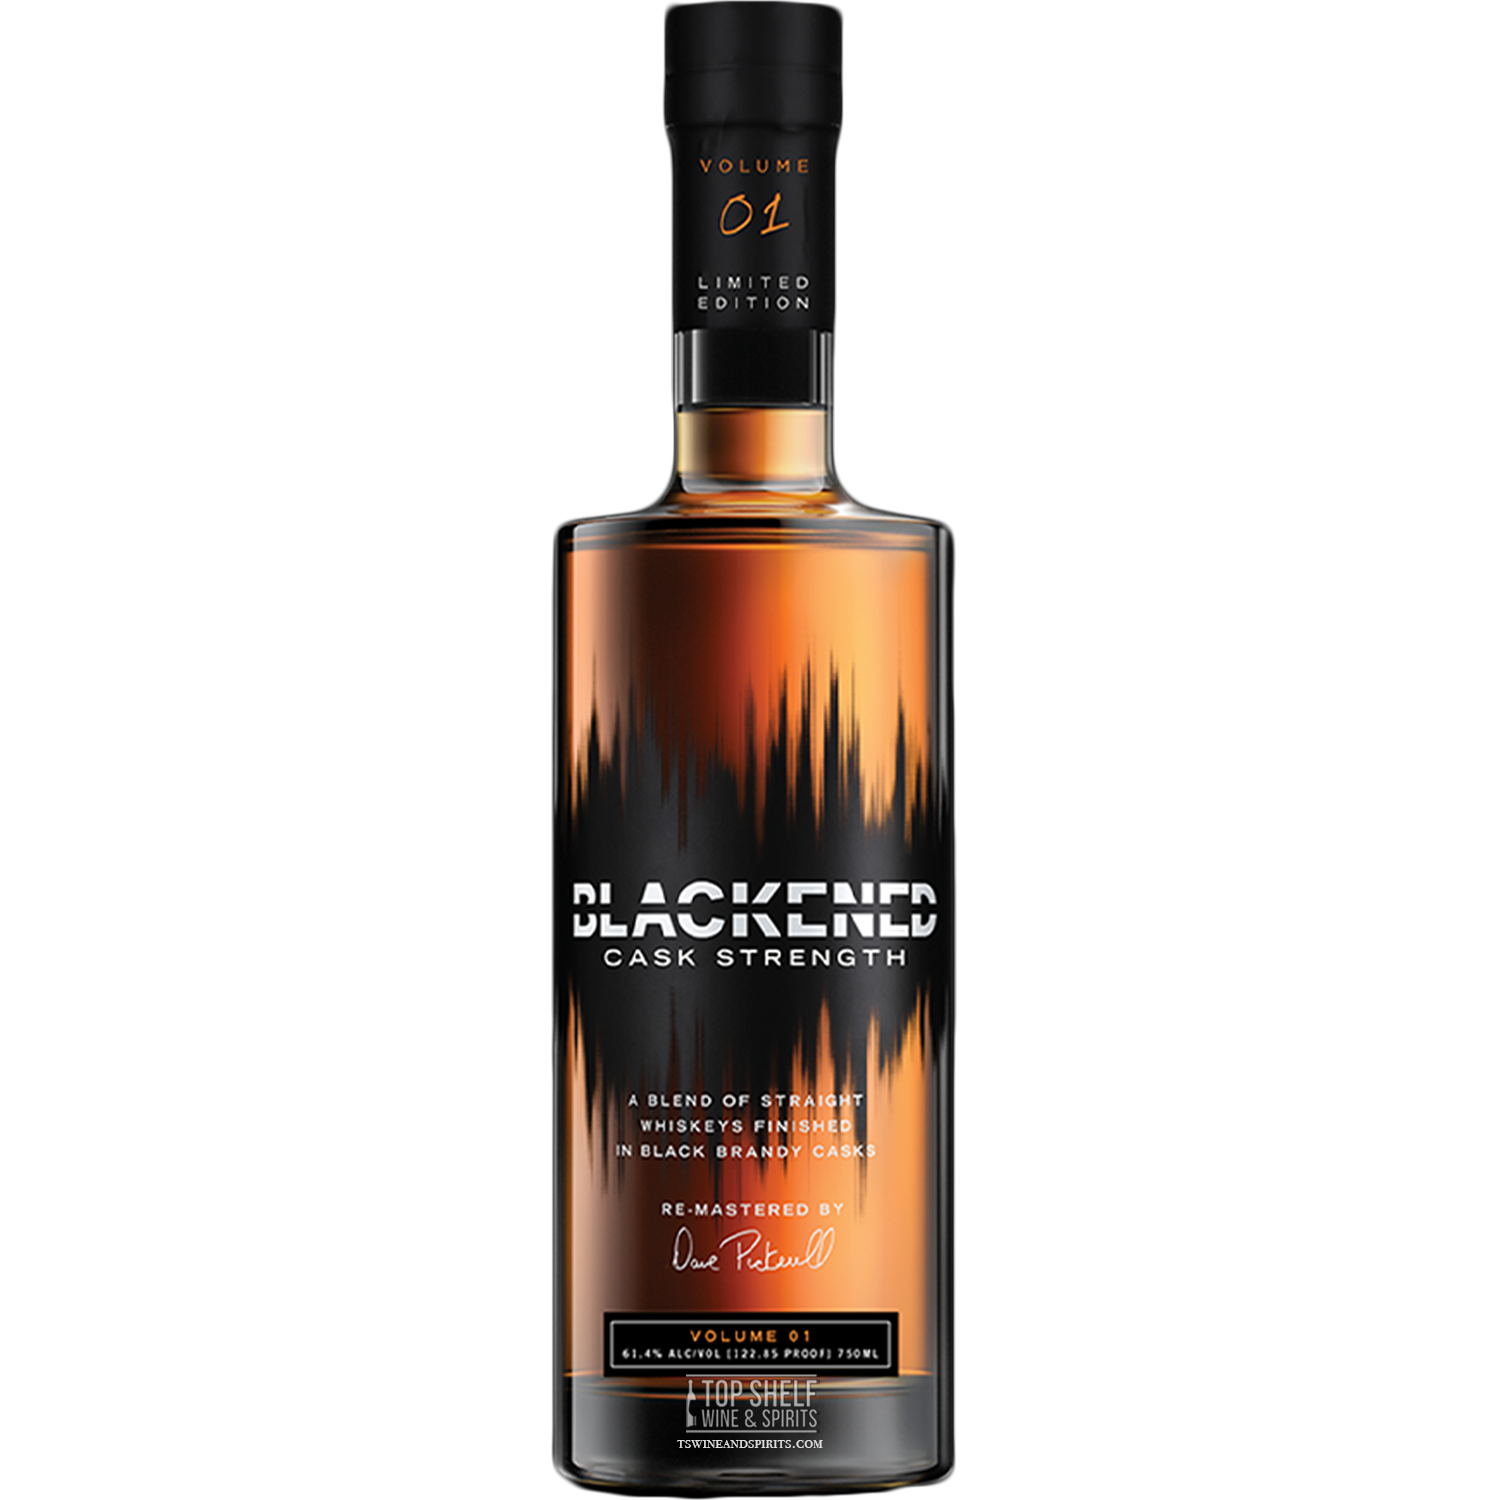 Blackened Volume 1 Cask Strength Blended Whiskey